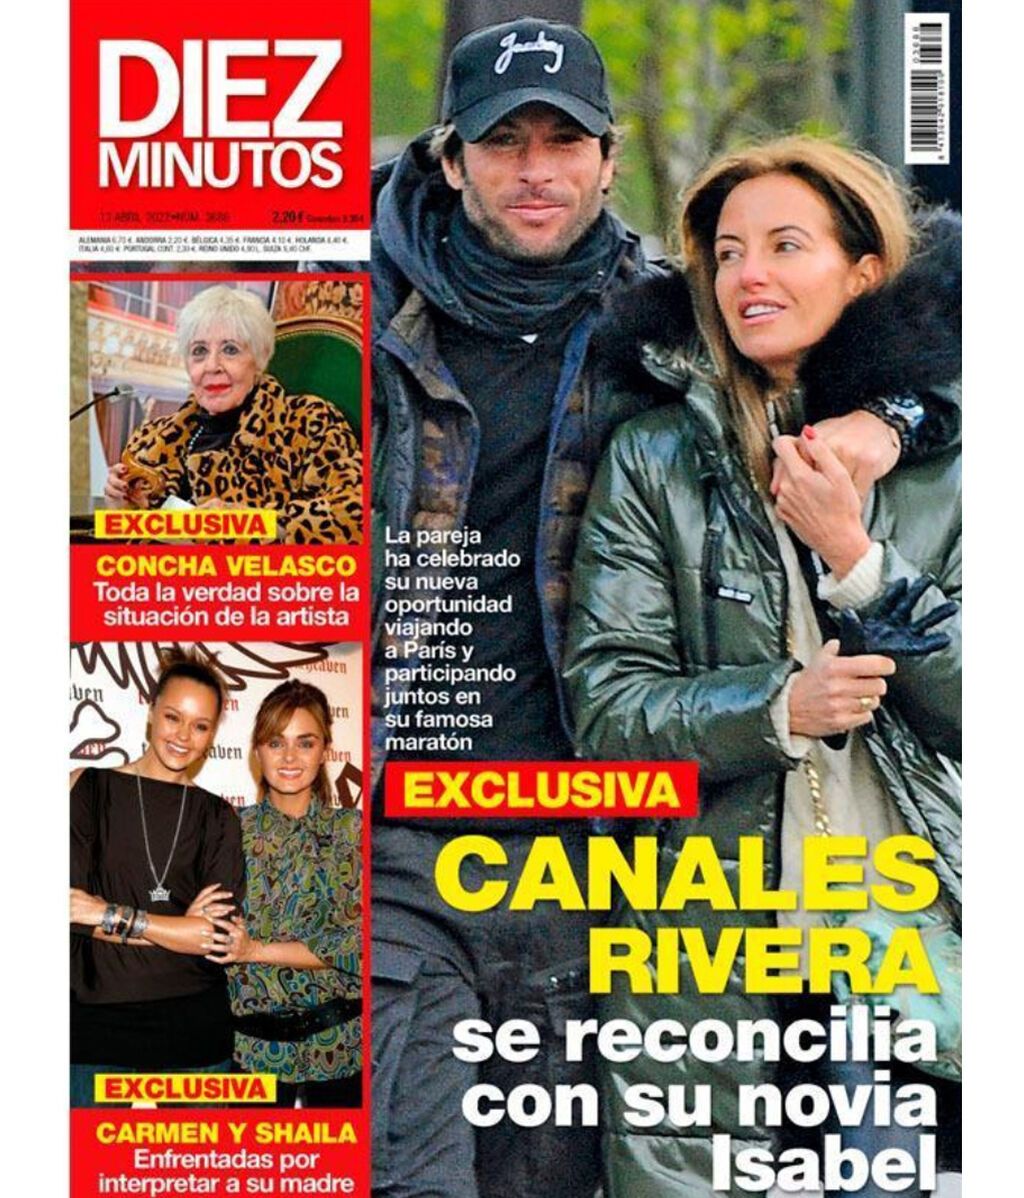 La imagen en la que se puede ver que Canales Rivera se ha reconciliado con su ex